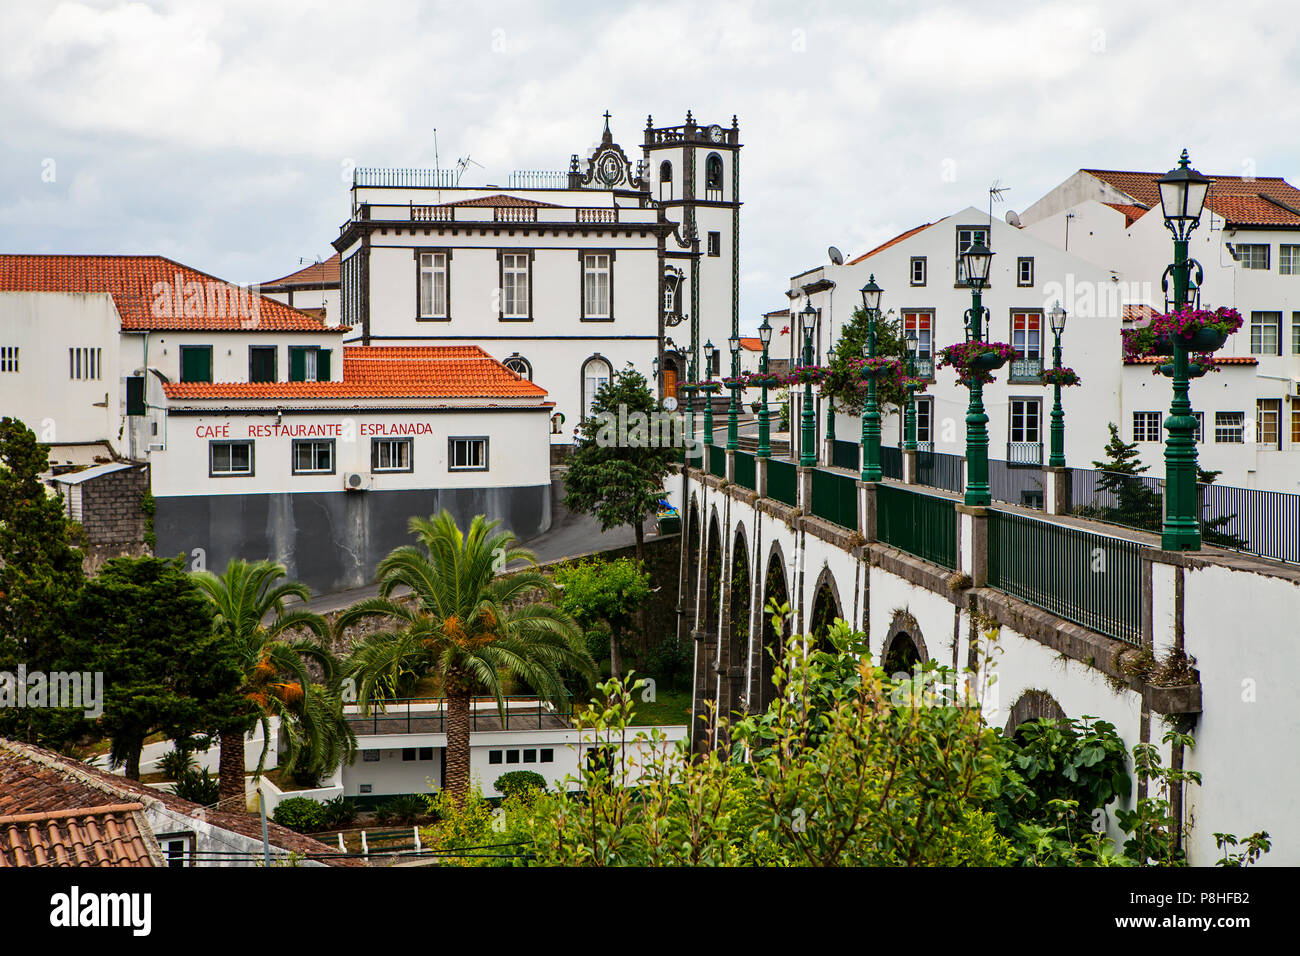 NORDESTE, Portogallo - Giugno 29th, 2018: La città del Nordeste, che è il centro dell'area nord est sull isola Sao Miguel, Azzorre. Foto Stock